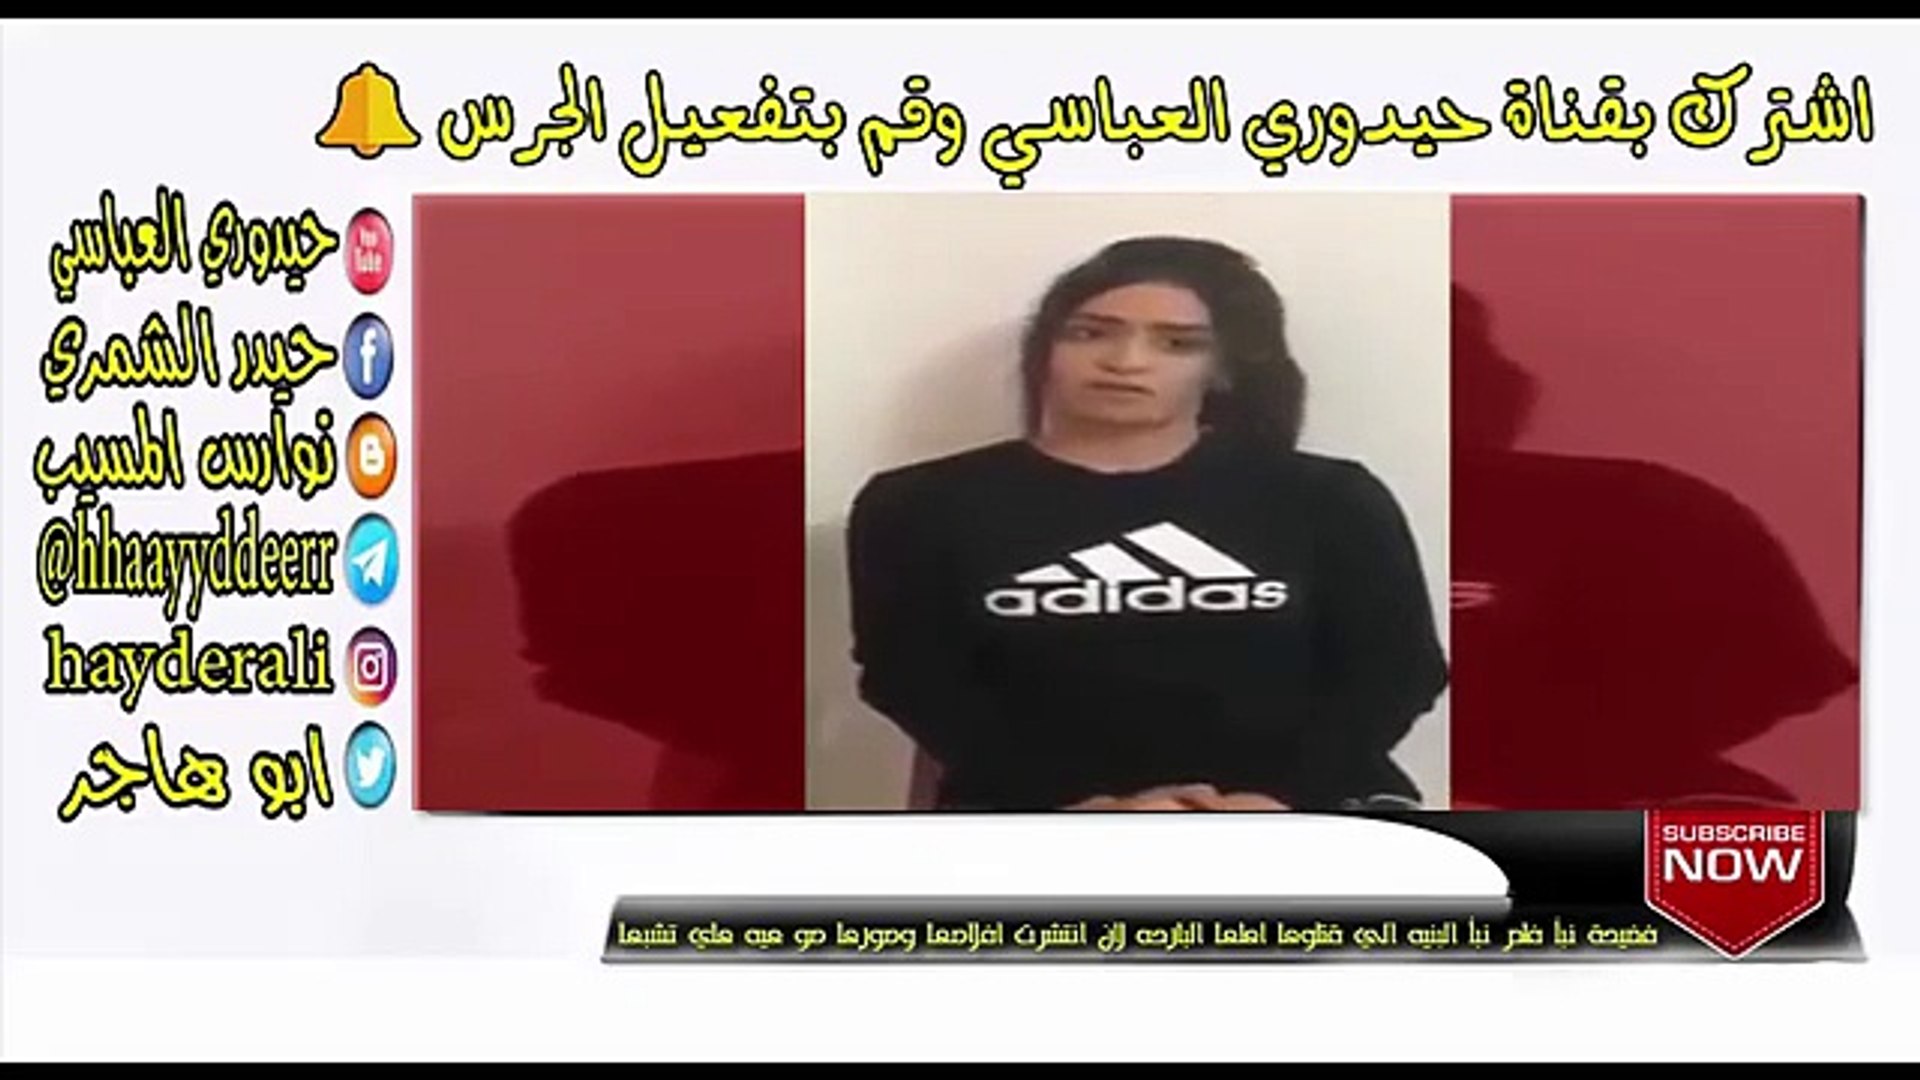 اهلها البنت قتلوها السوريه اللي البنت السورية